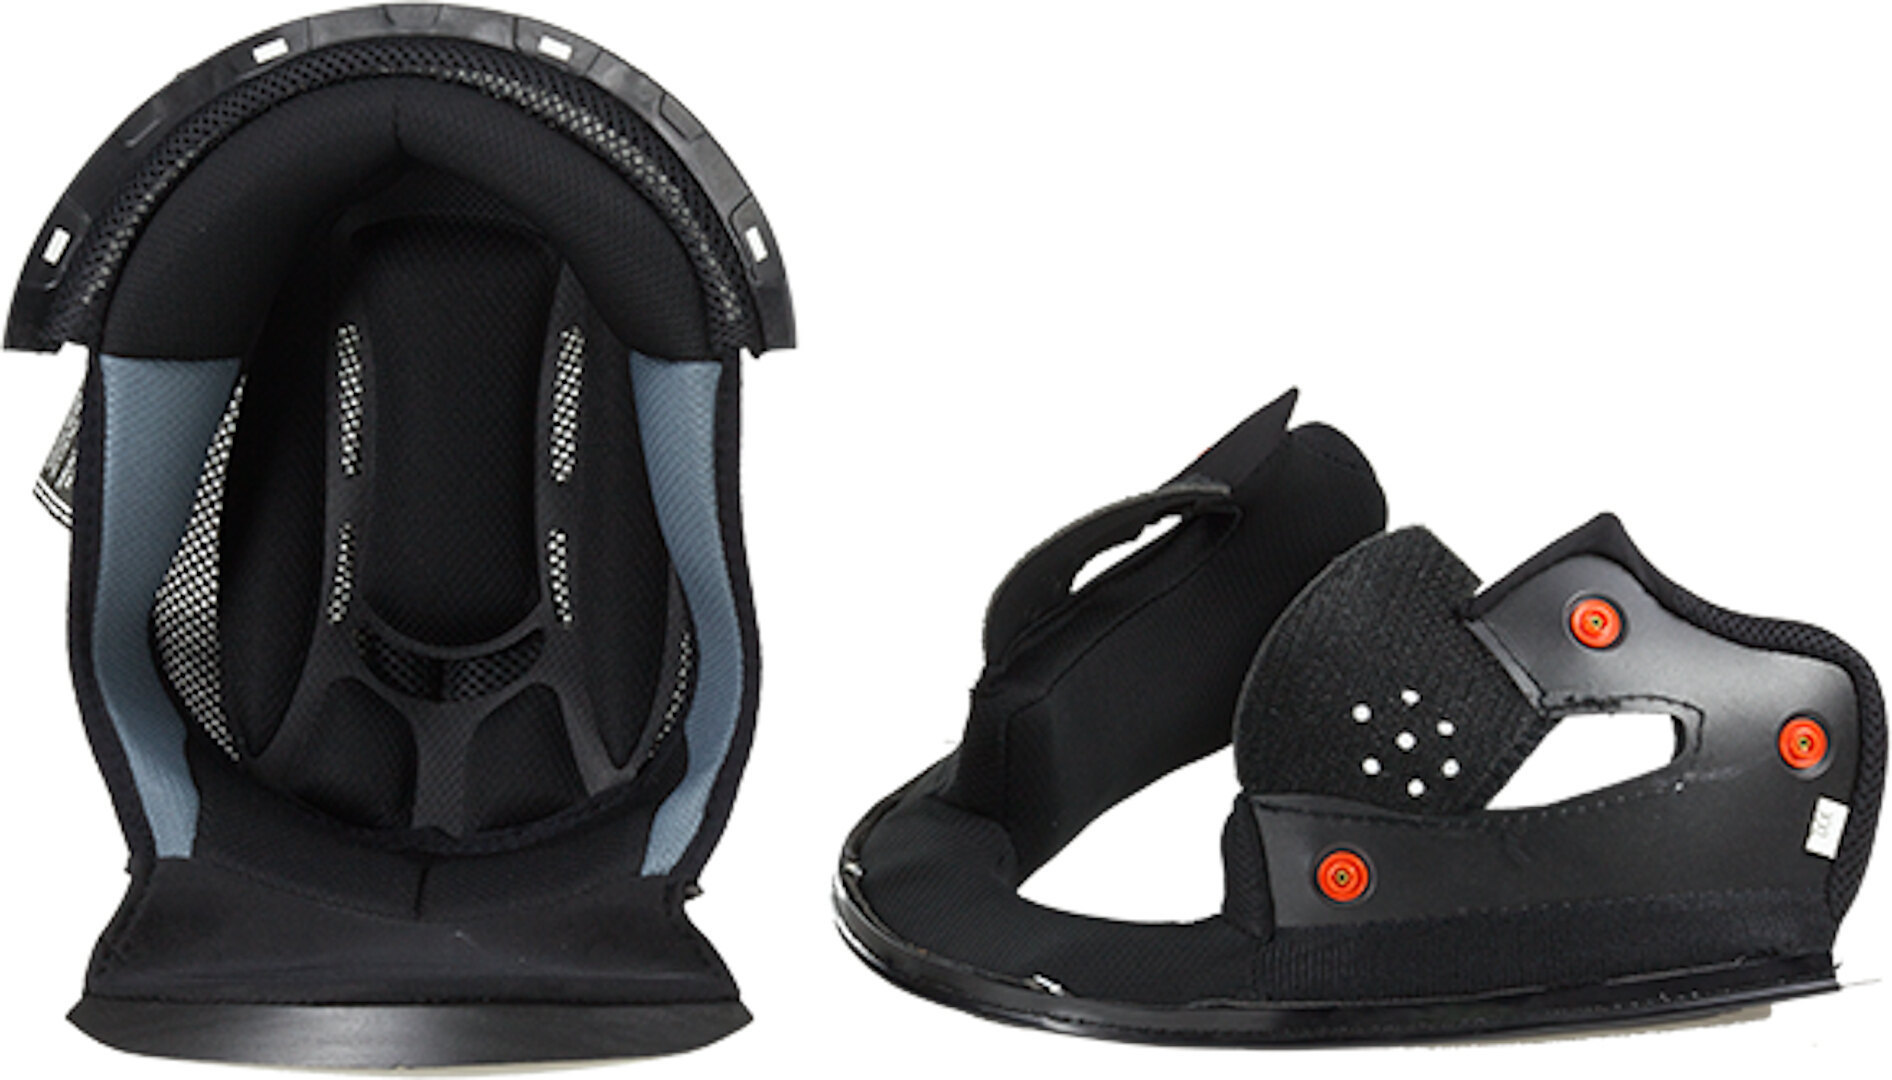 Подкладка LS2 FF325 Strobe внутренняя для шлема внутренняя подкладка для шлема защитная губка буферная набивка для мотоцикла велосипеда безопасный для езды удобный коврик для шлема